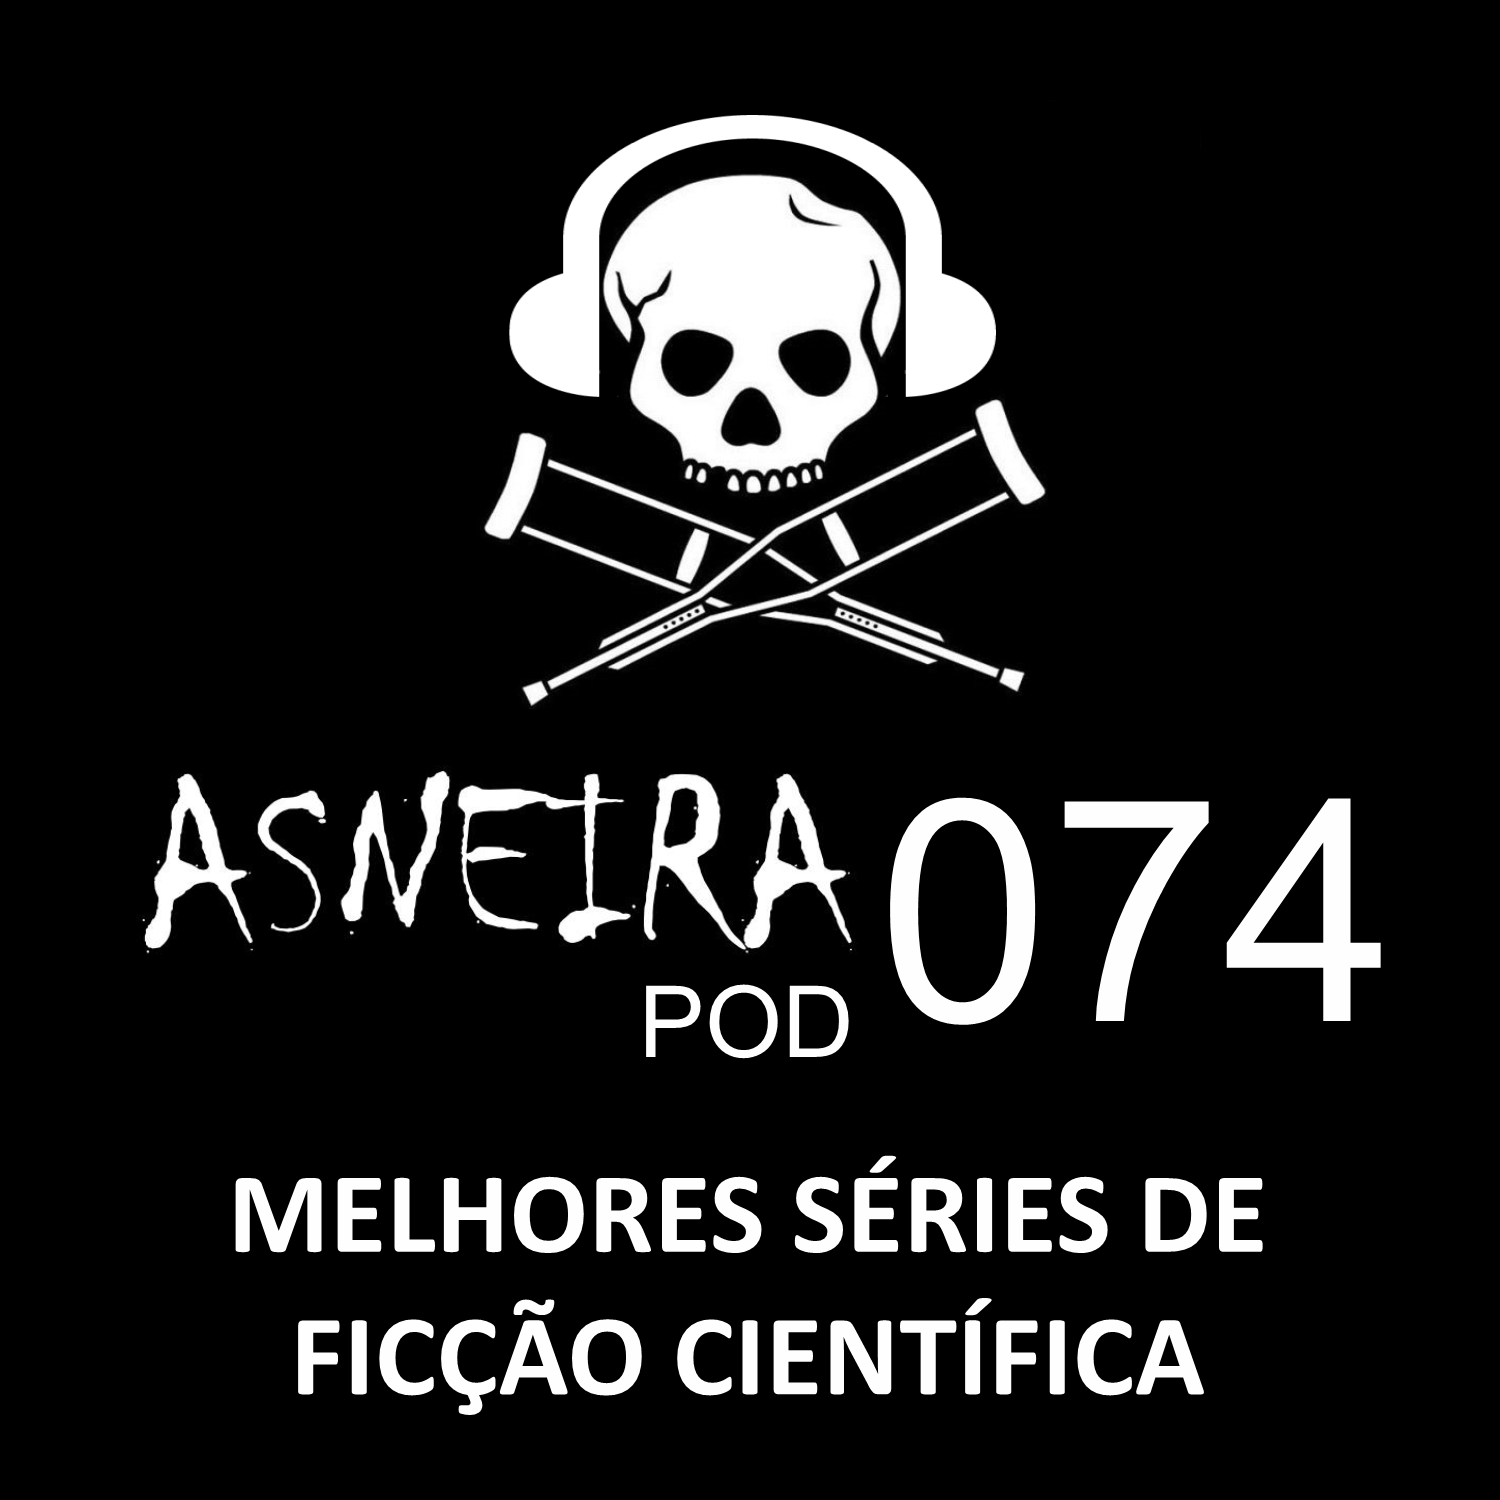 AsneiraPOD 074 – Melhores séries de ficção científica